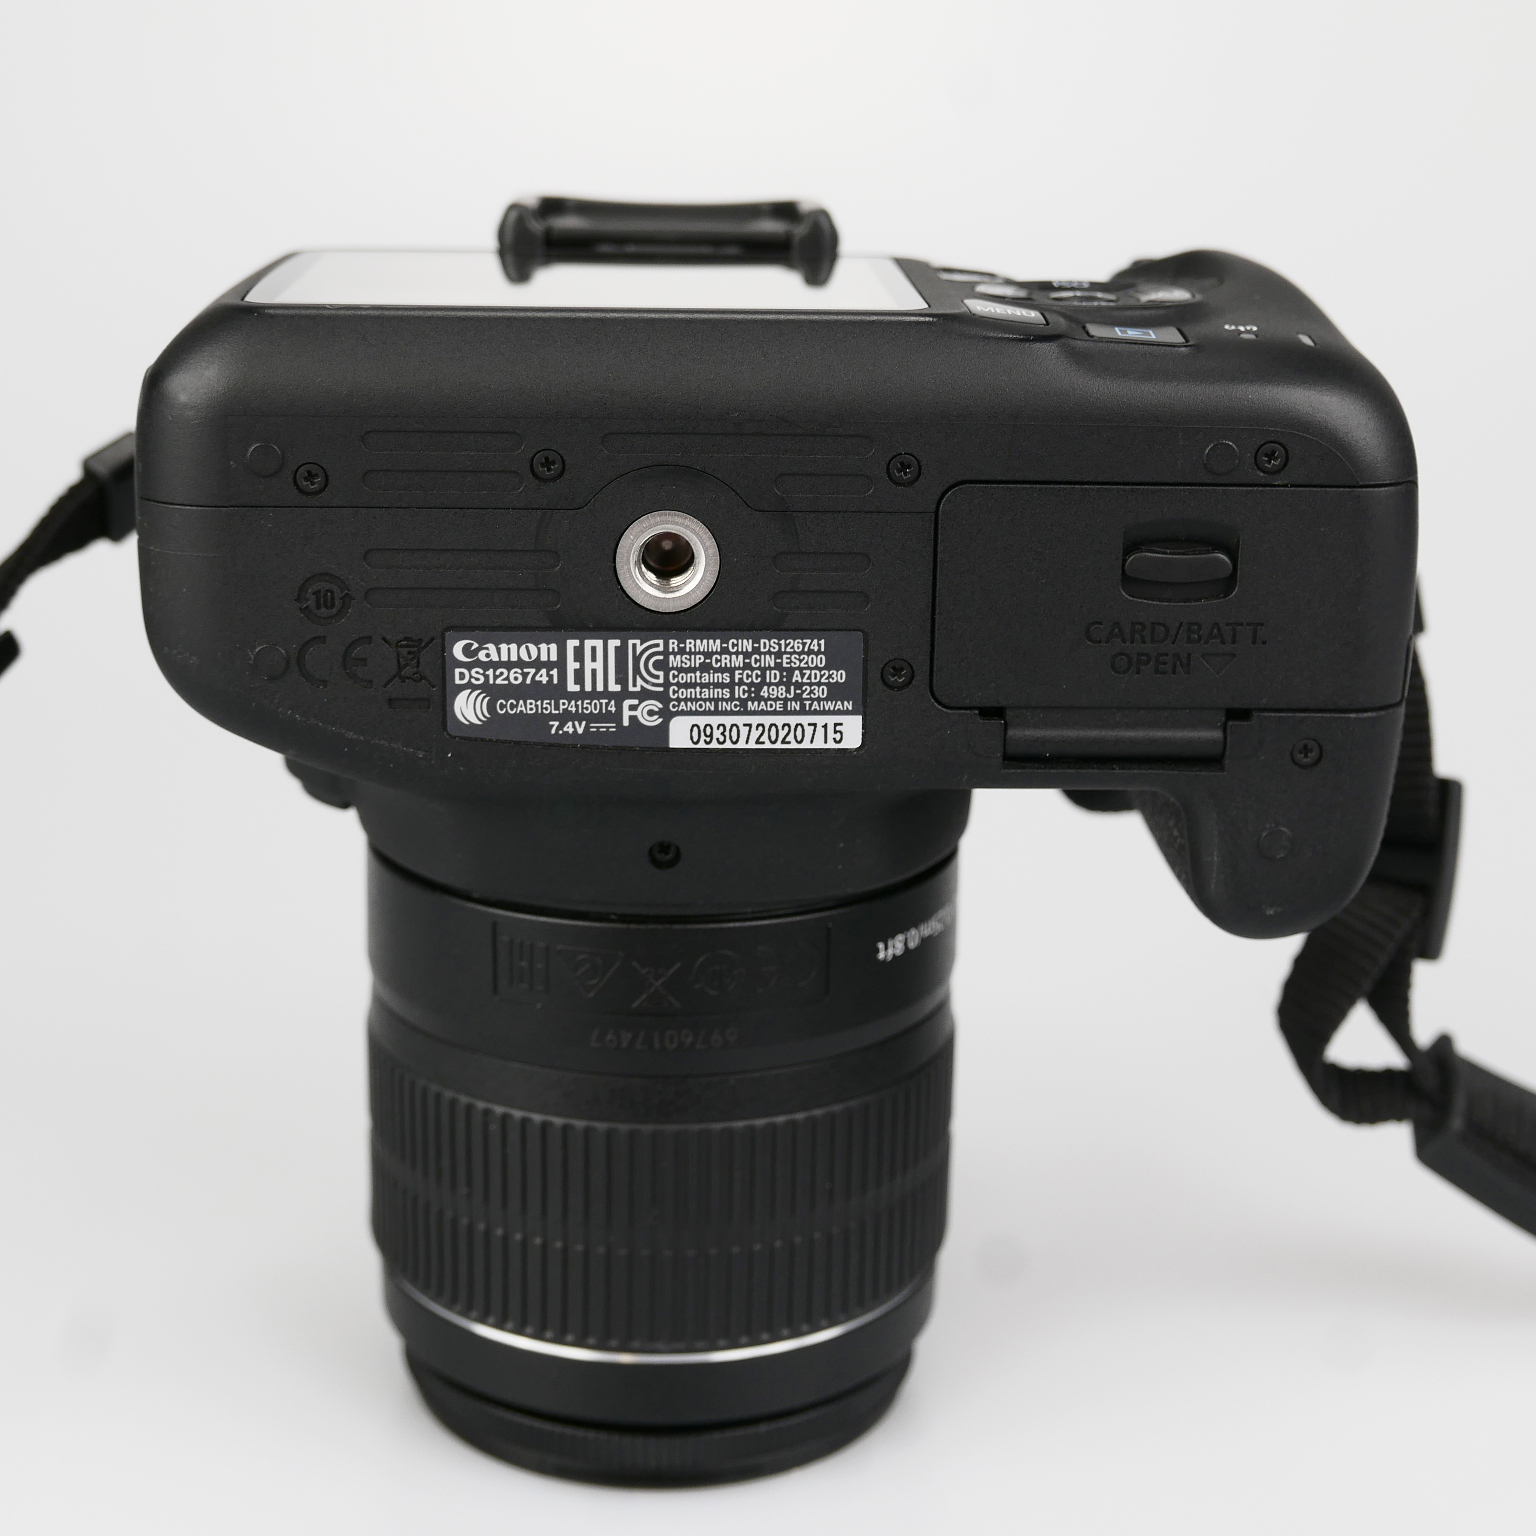 (Myyty) Canon EOS 2000D + 18-55mm IS II (SC: 2750) (käytetty)